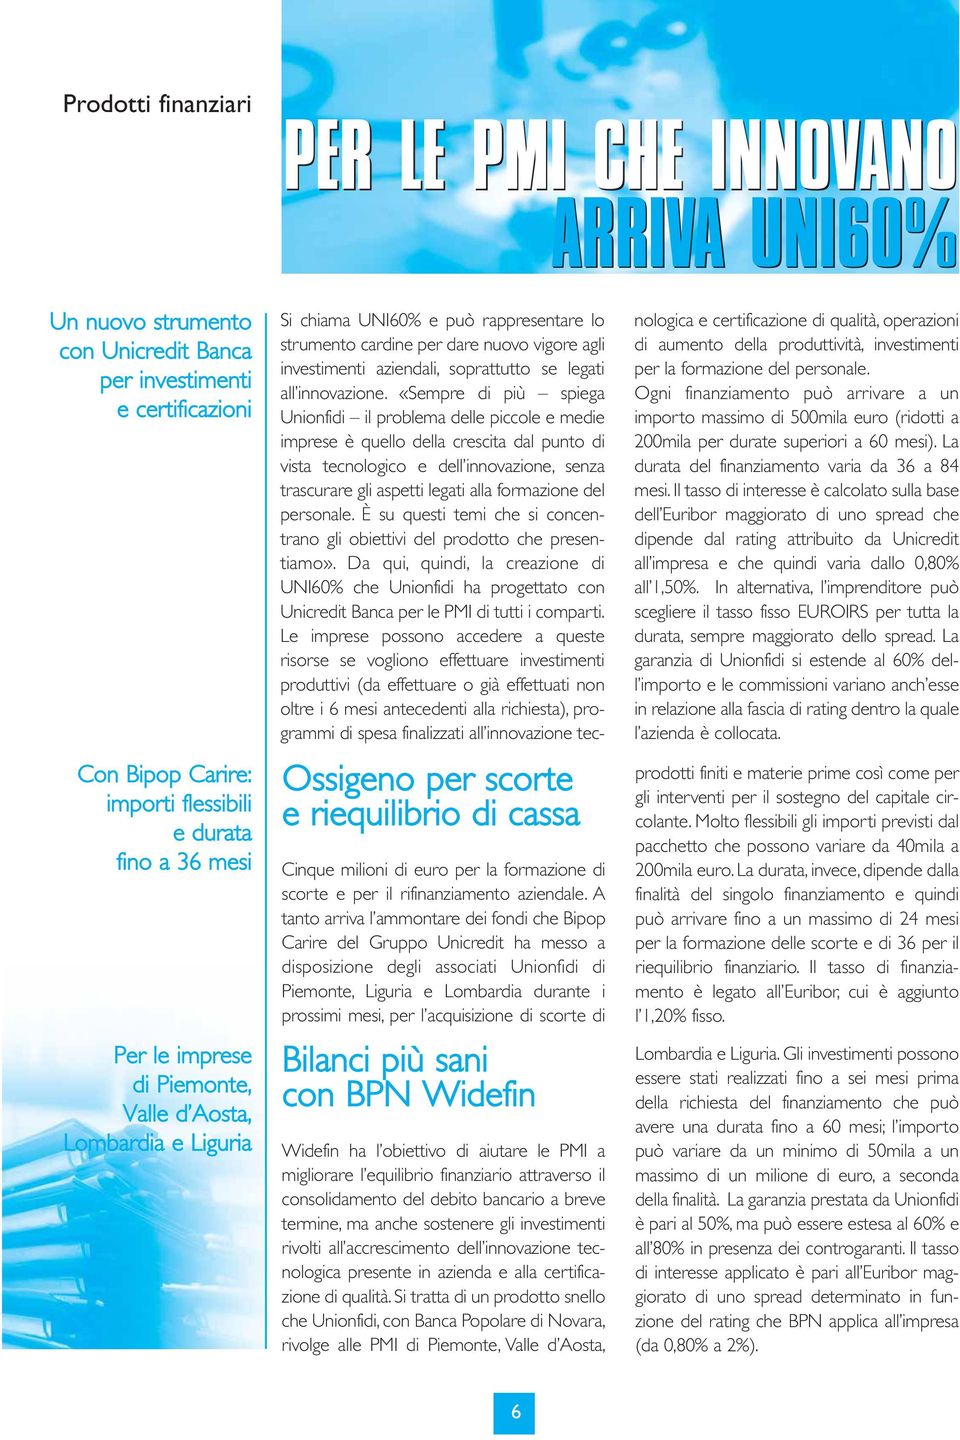 A tanto arriva l ammontare dei fondi che Bipop Carire del Gruppo Unicredit ha messo a disposizione degli associati Unionfidi di Piemonte, Liguria e Lombardia durante i prossimi mesi, per l